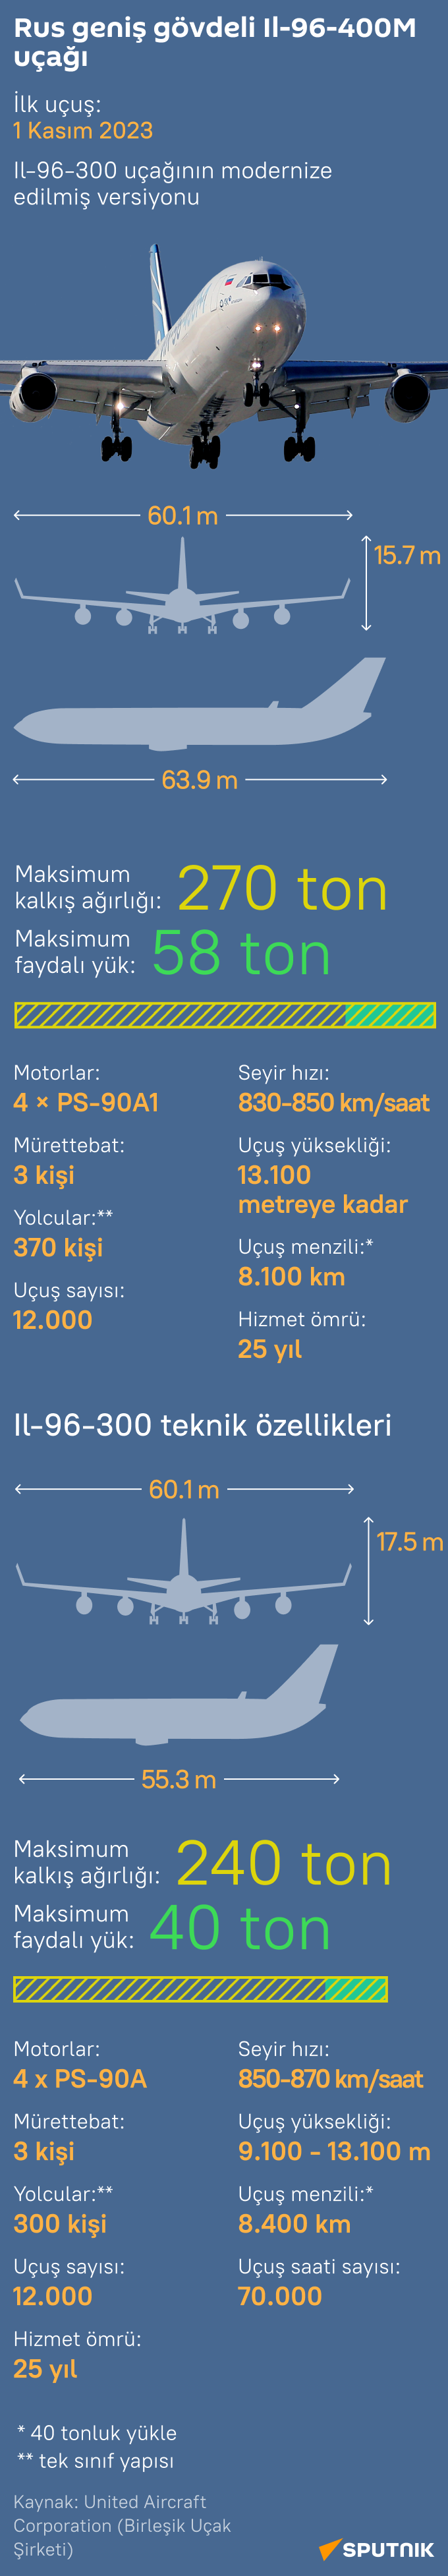 İlk uçuşunu yapan Rus İl-96-400M uçağının özellikleri nelerdir? - Sputnik Türkiye